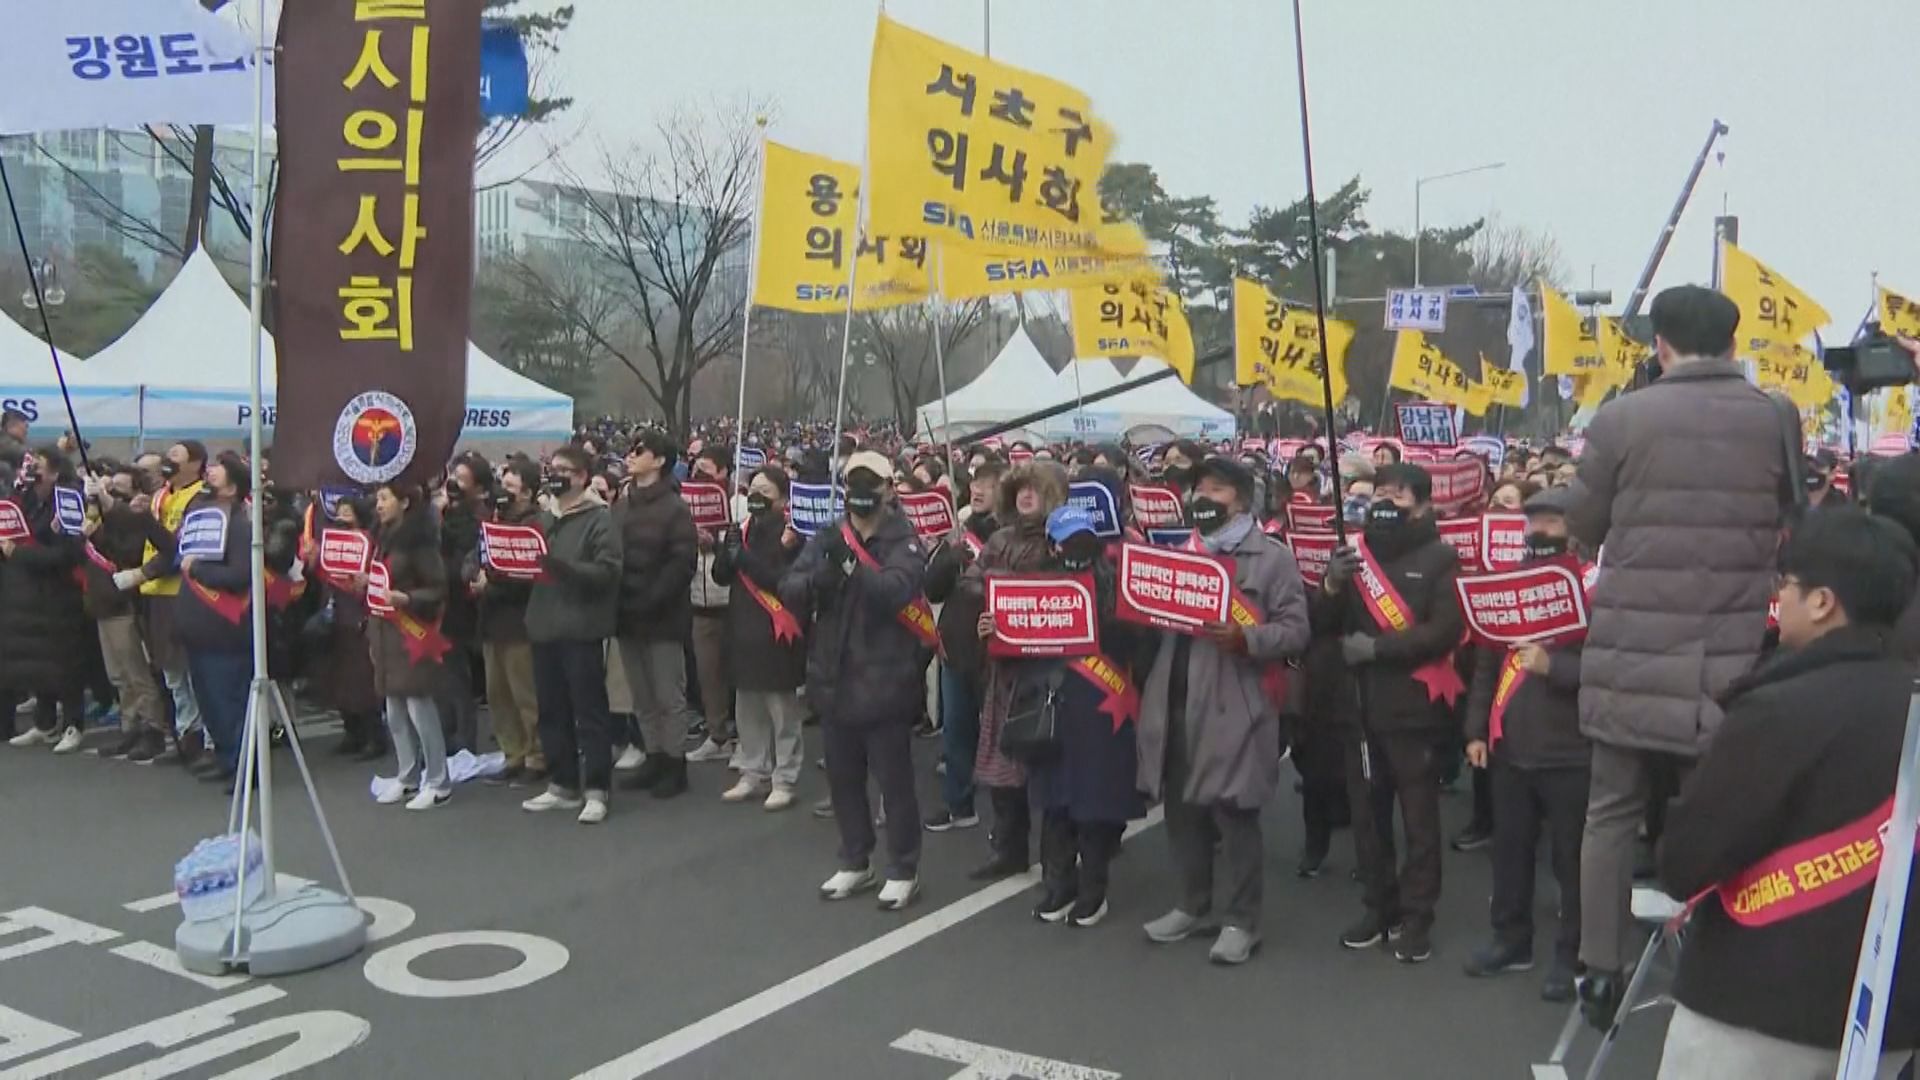 南韓醫生工潮持續 當局即將對拒絕復工醫生採取行政及司法處分